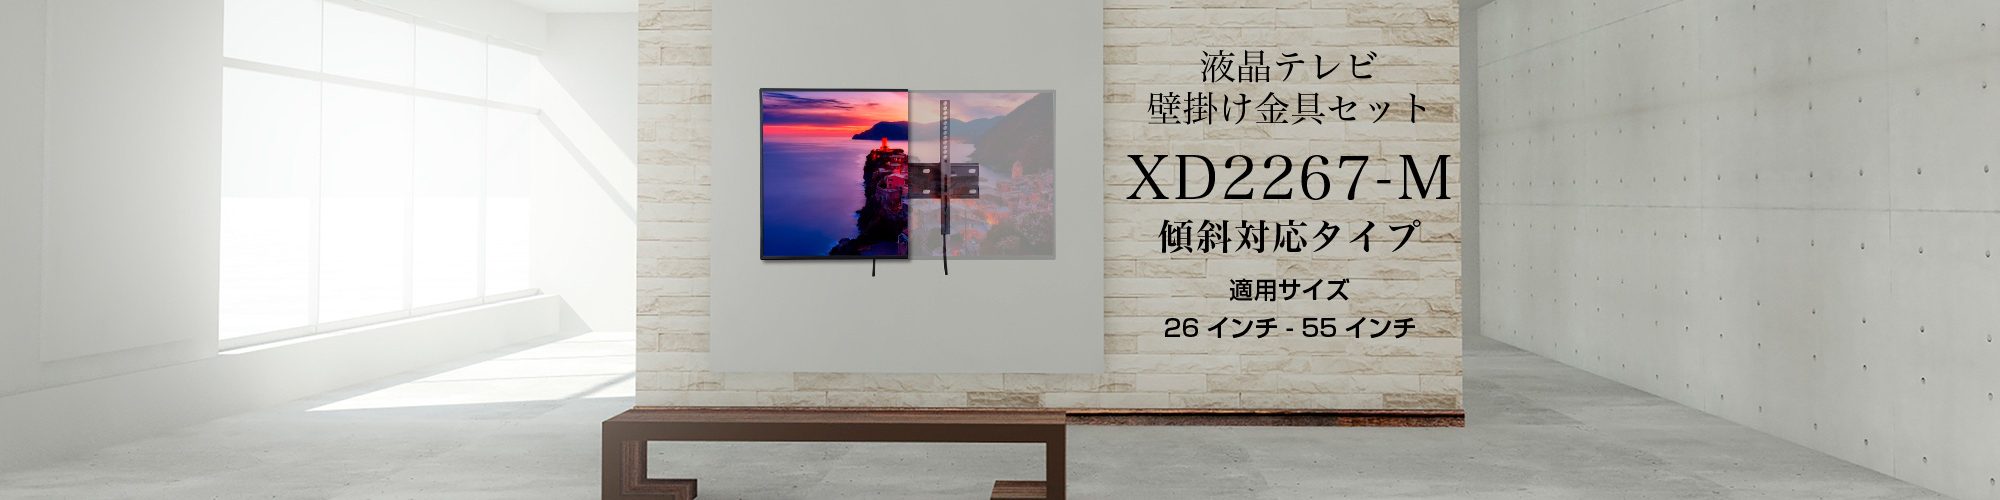 液晶テレビ用壁掛け金具セット XD2267-M – bizz 公式サイト